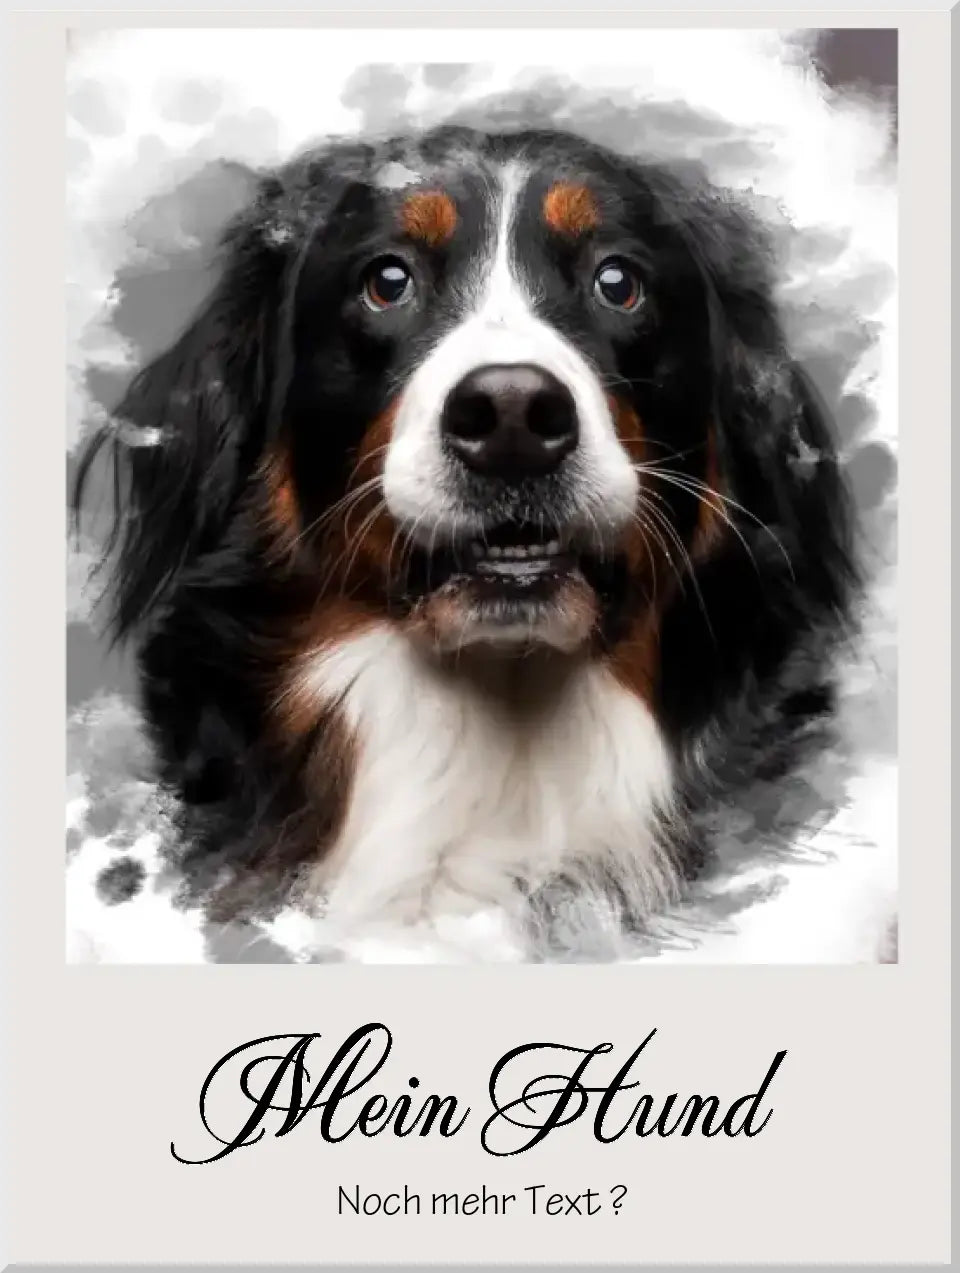 Hund Fotoposter | Dein personalisiertes Haustier Portrait Poster im Aquarell Art Stil | Dein Hund, Deine Katze, Dein Lieblingstier Poster